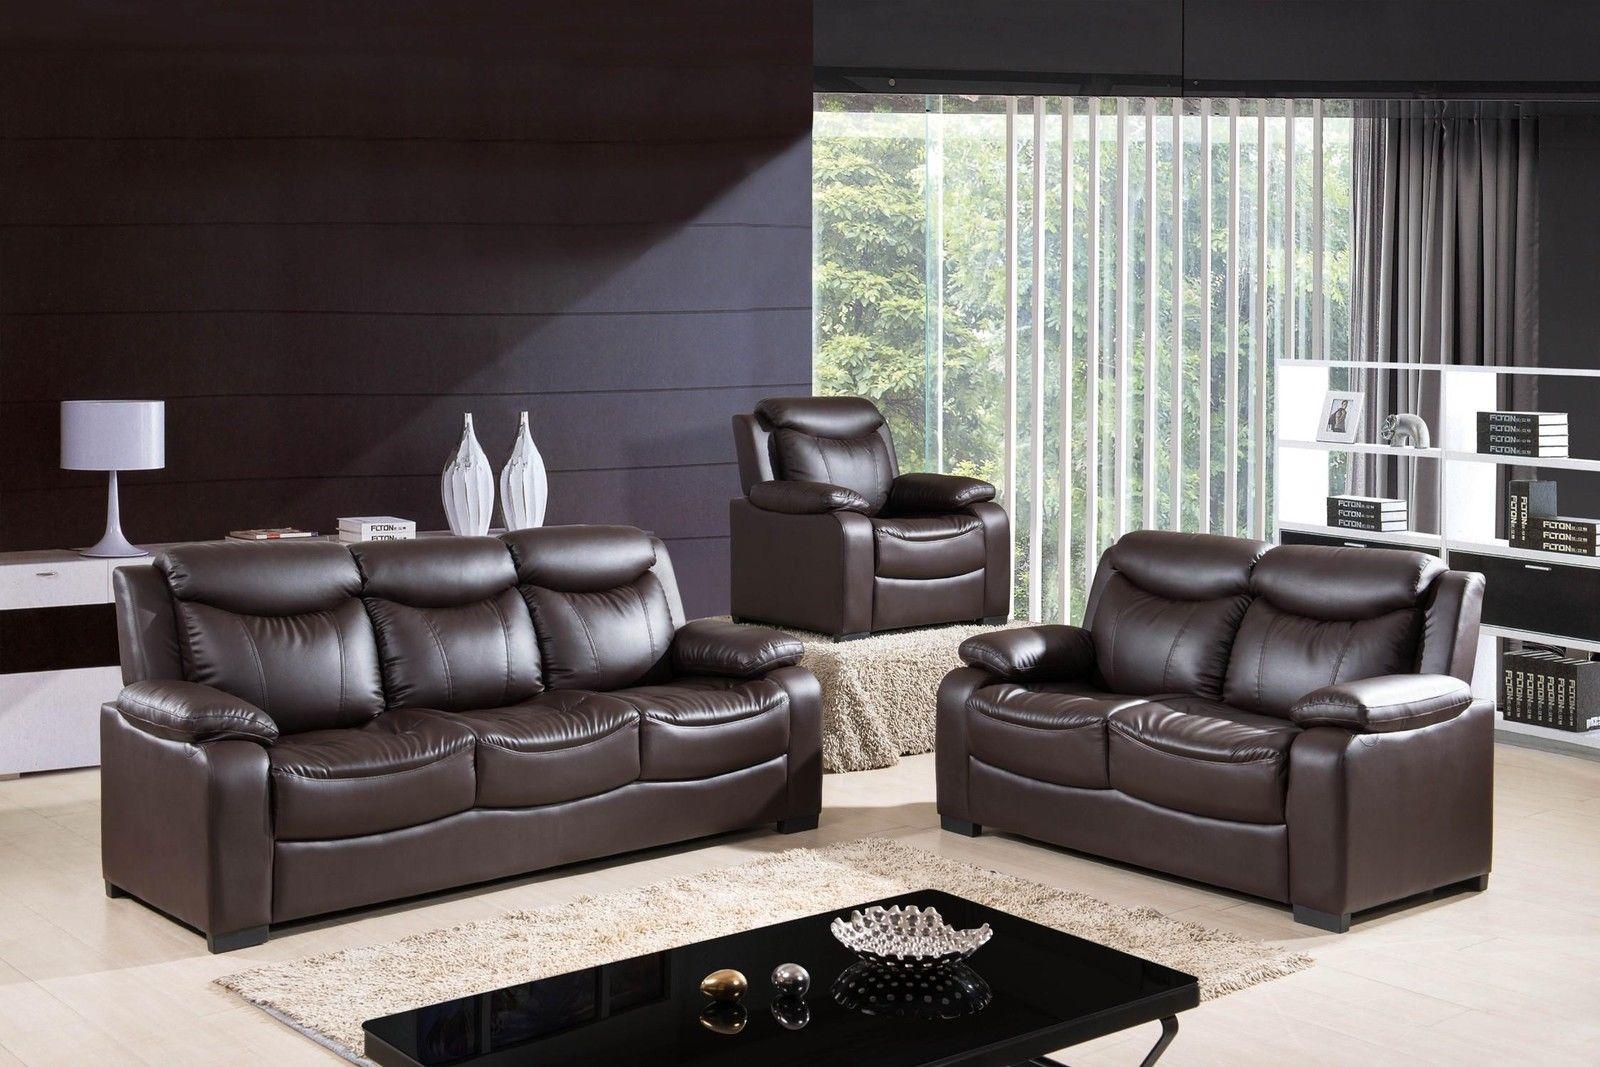 

    
McFerran SF5506 Contemporary Chocolate PU Living Room Sofa Set 2Pcs
